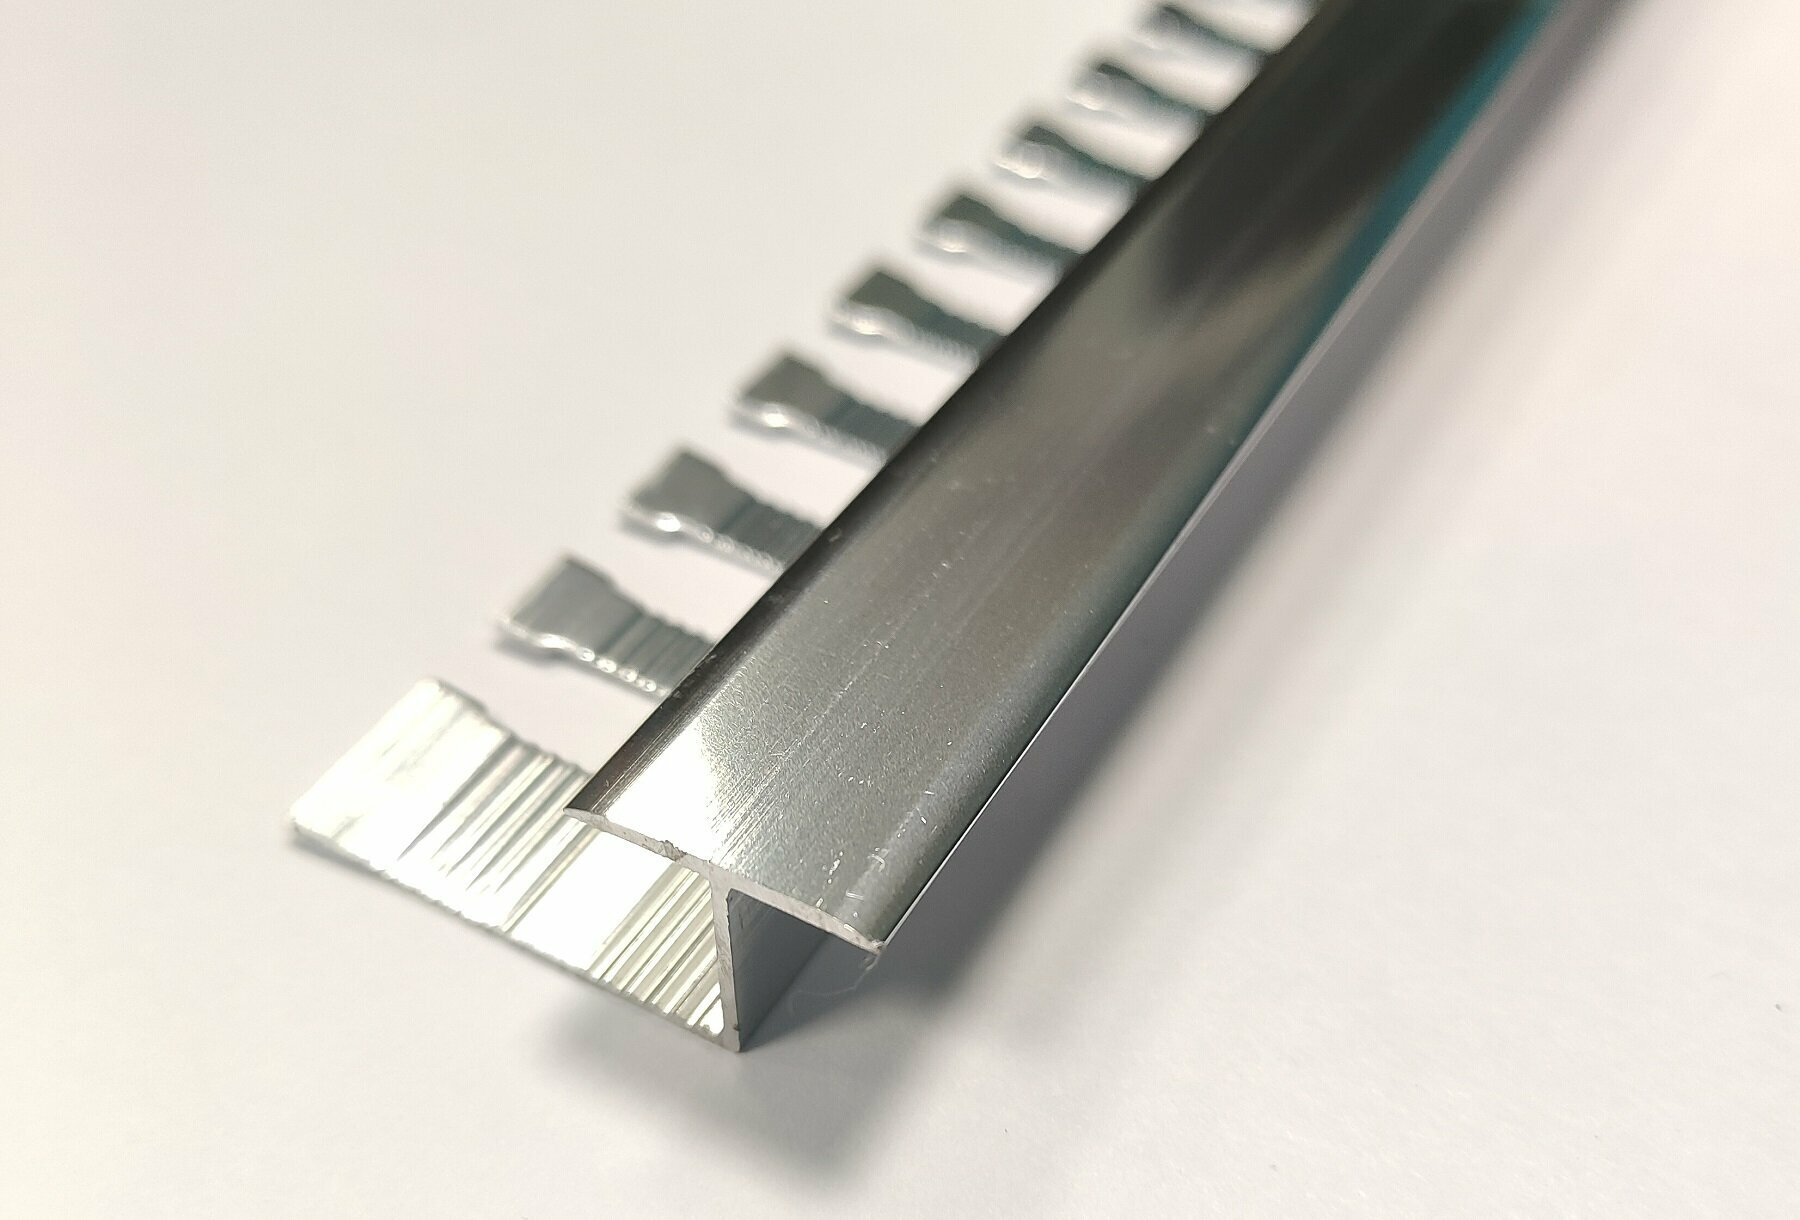 Порожек Т-образный алюминиевый гибкий для напольных покрытий, ширина 16мм, высота 10мм, длина 2,7м, ПЗ-10 Анод серебро глянец